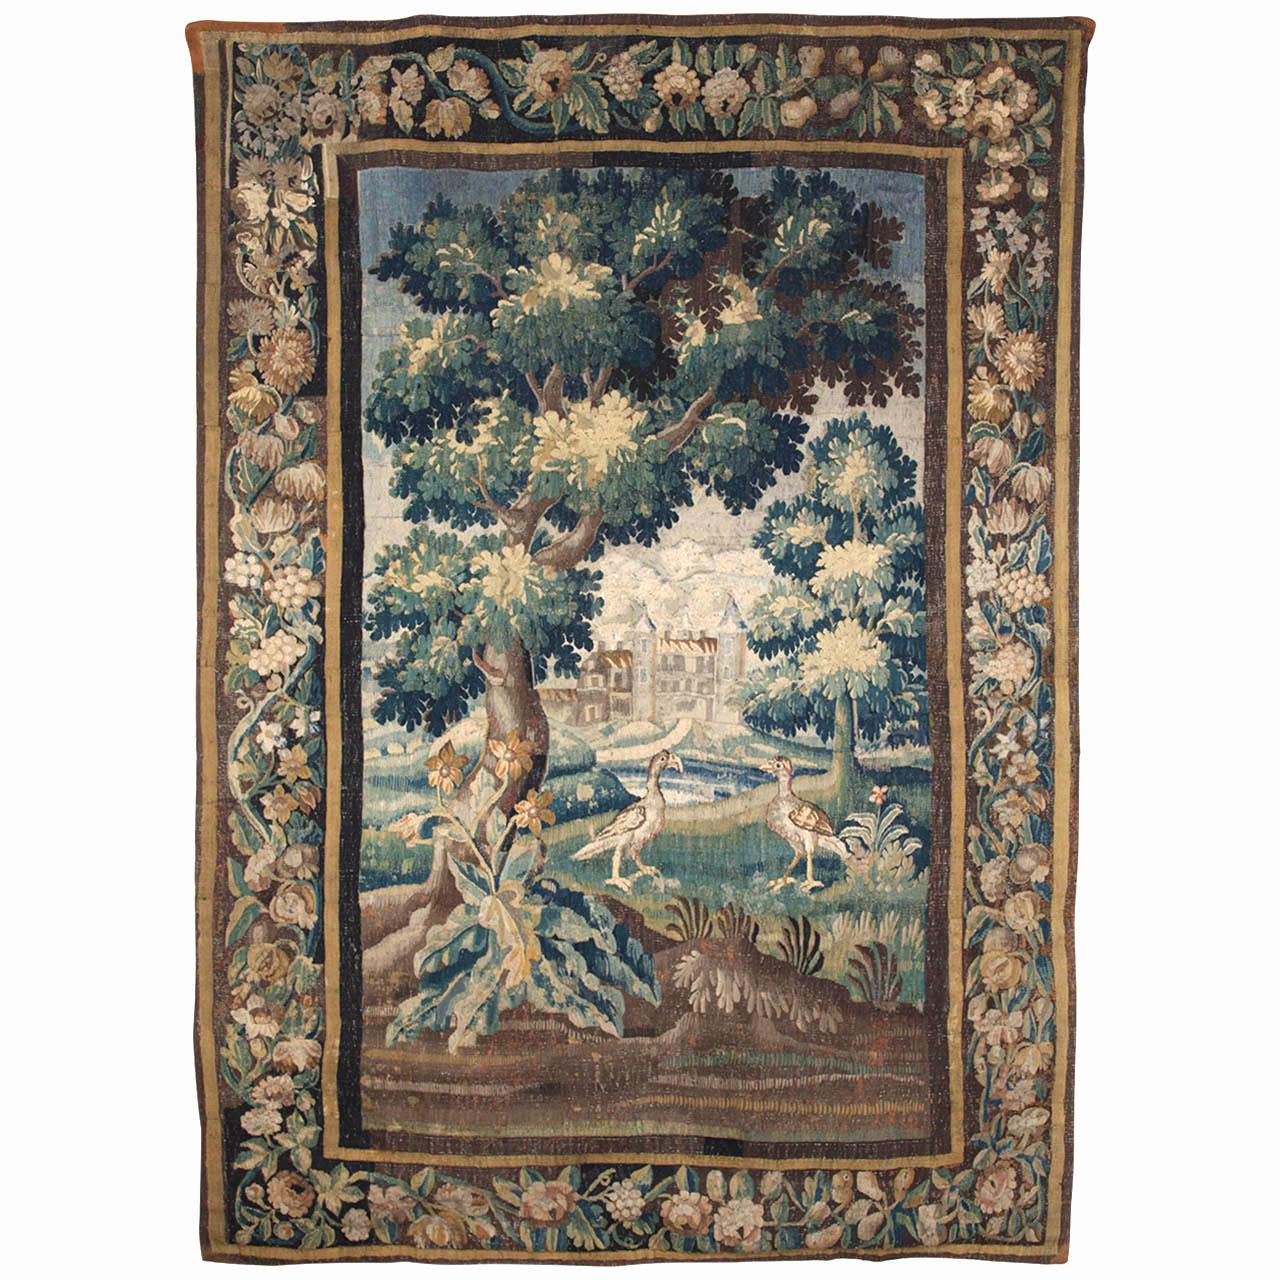 Belle tapisserie en verdure de Louis XIV, tissée à Aubusson, représentant un paysage de rivière boisée avec vue sur les châteaux voisins, dans une belle bordure florale sur quatre côtés.
Dimensions : cm 200 x 300.
France, seconde moitié du XVIIe